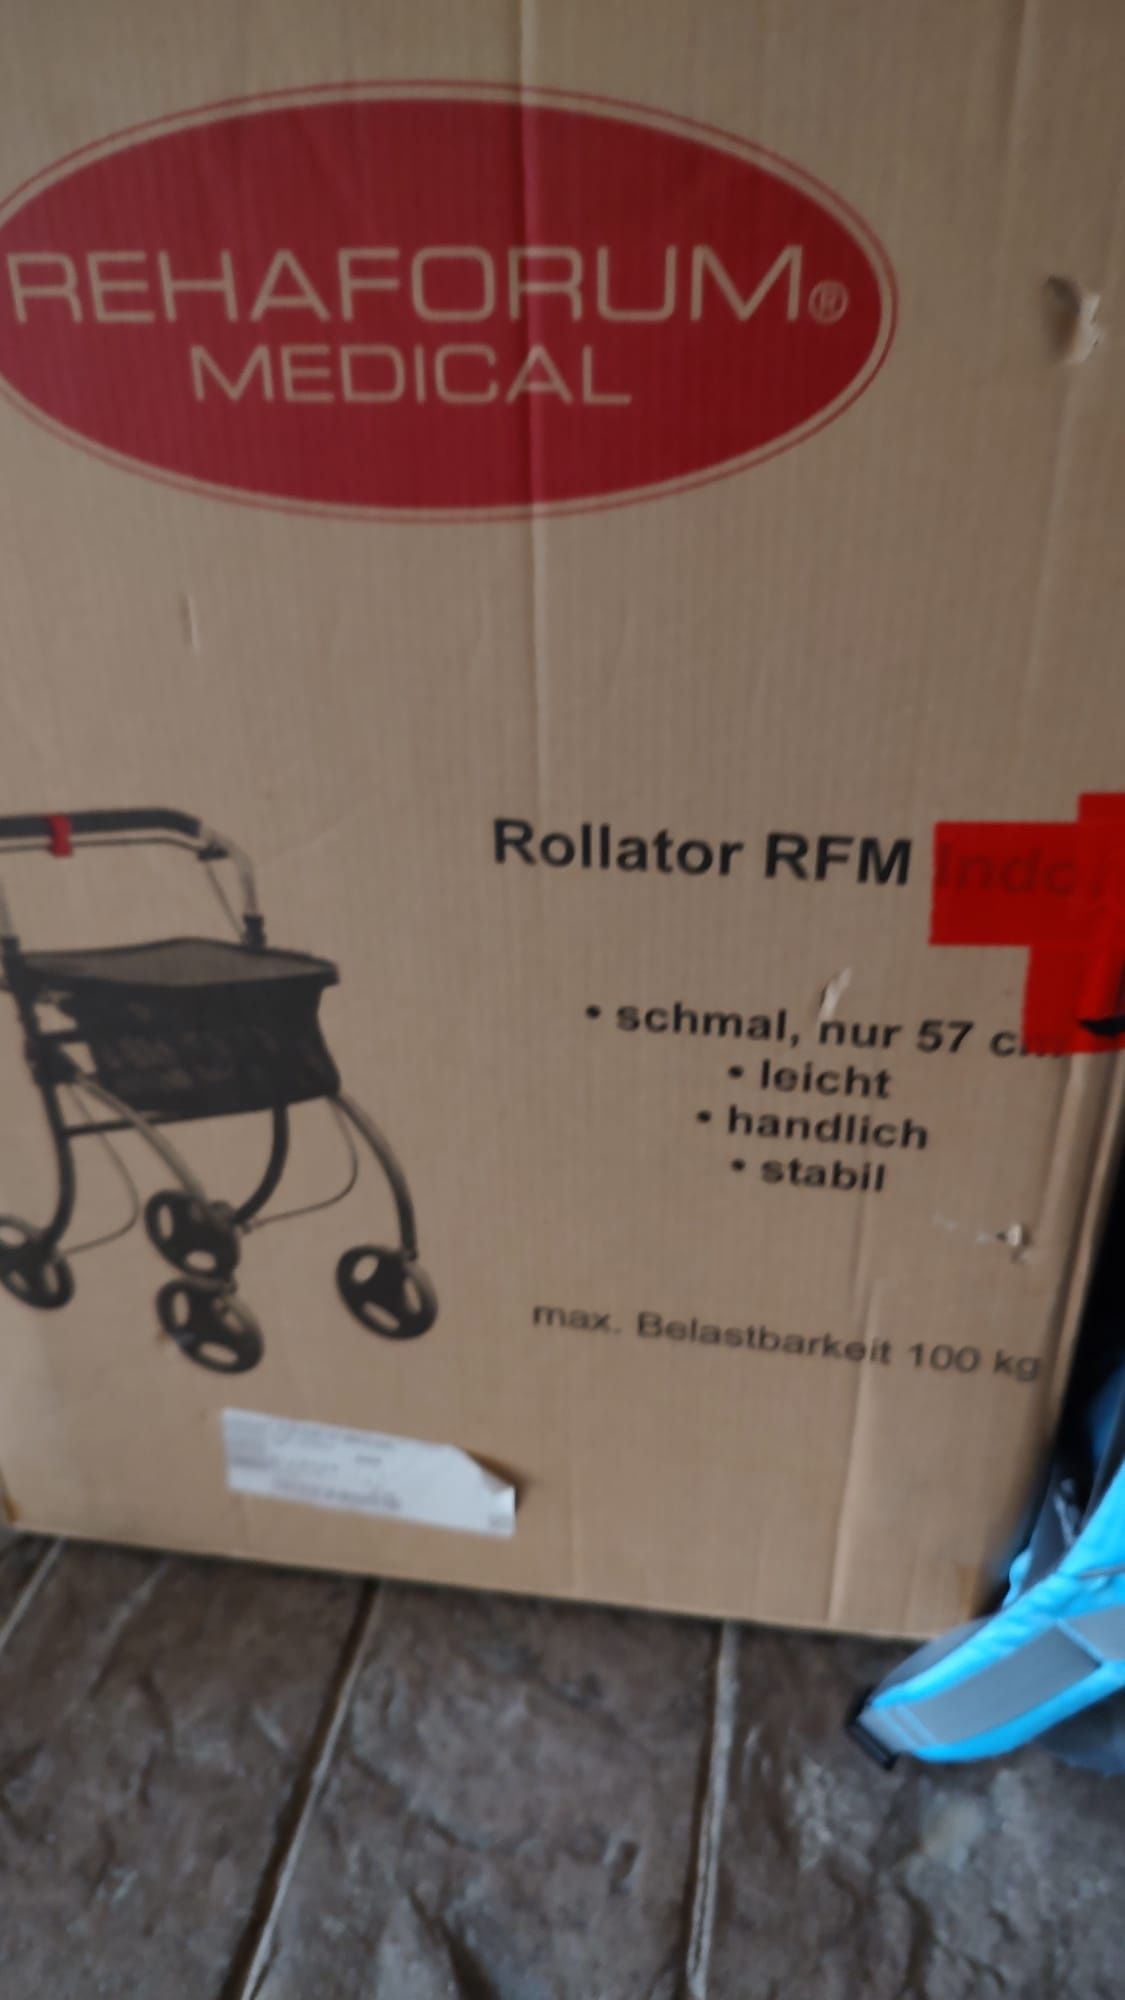 Vand rollator rfm indoor